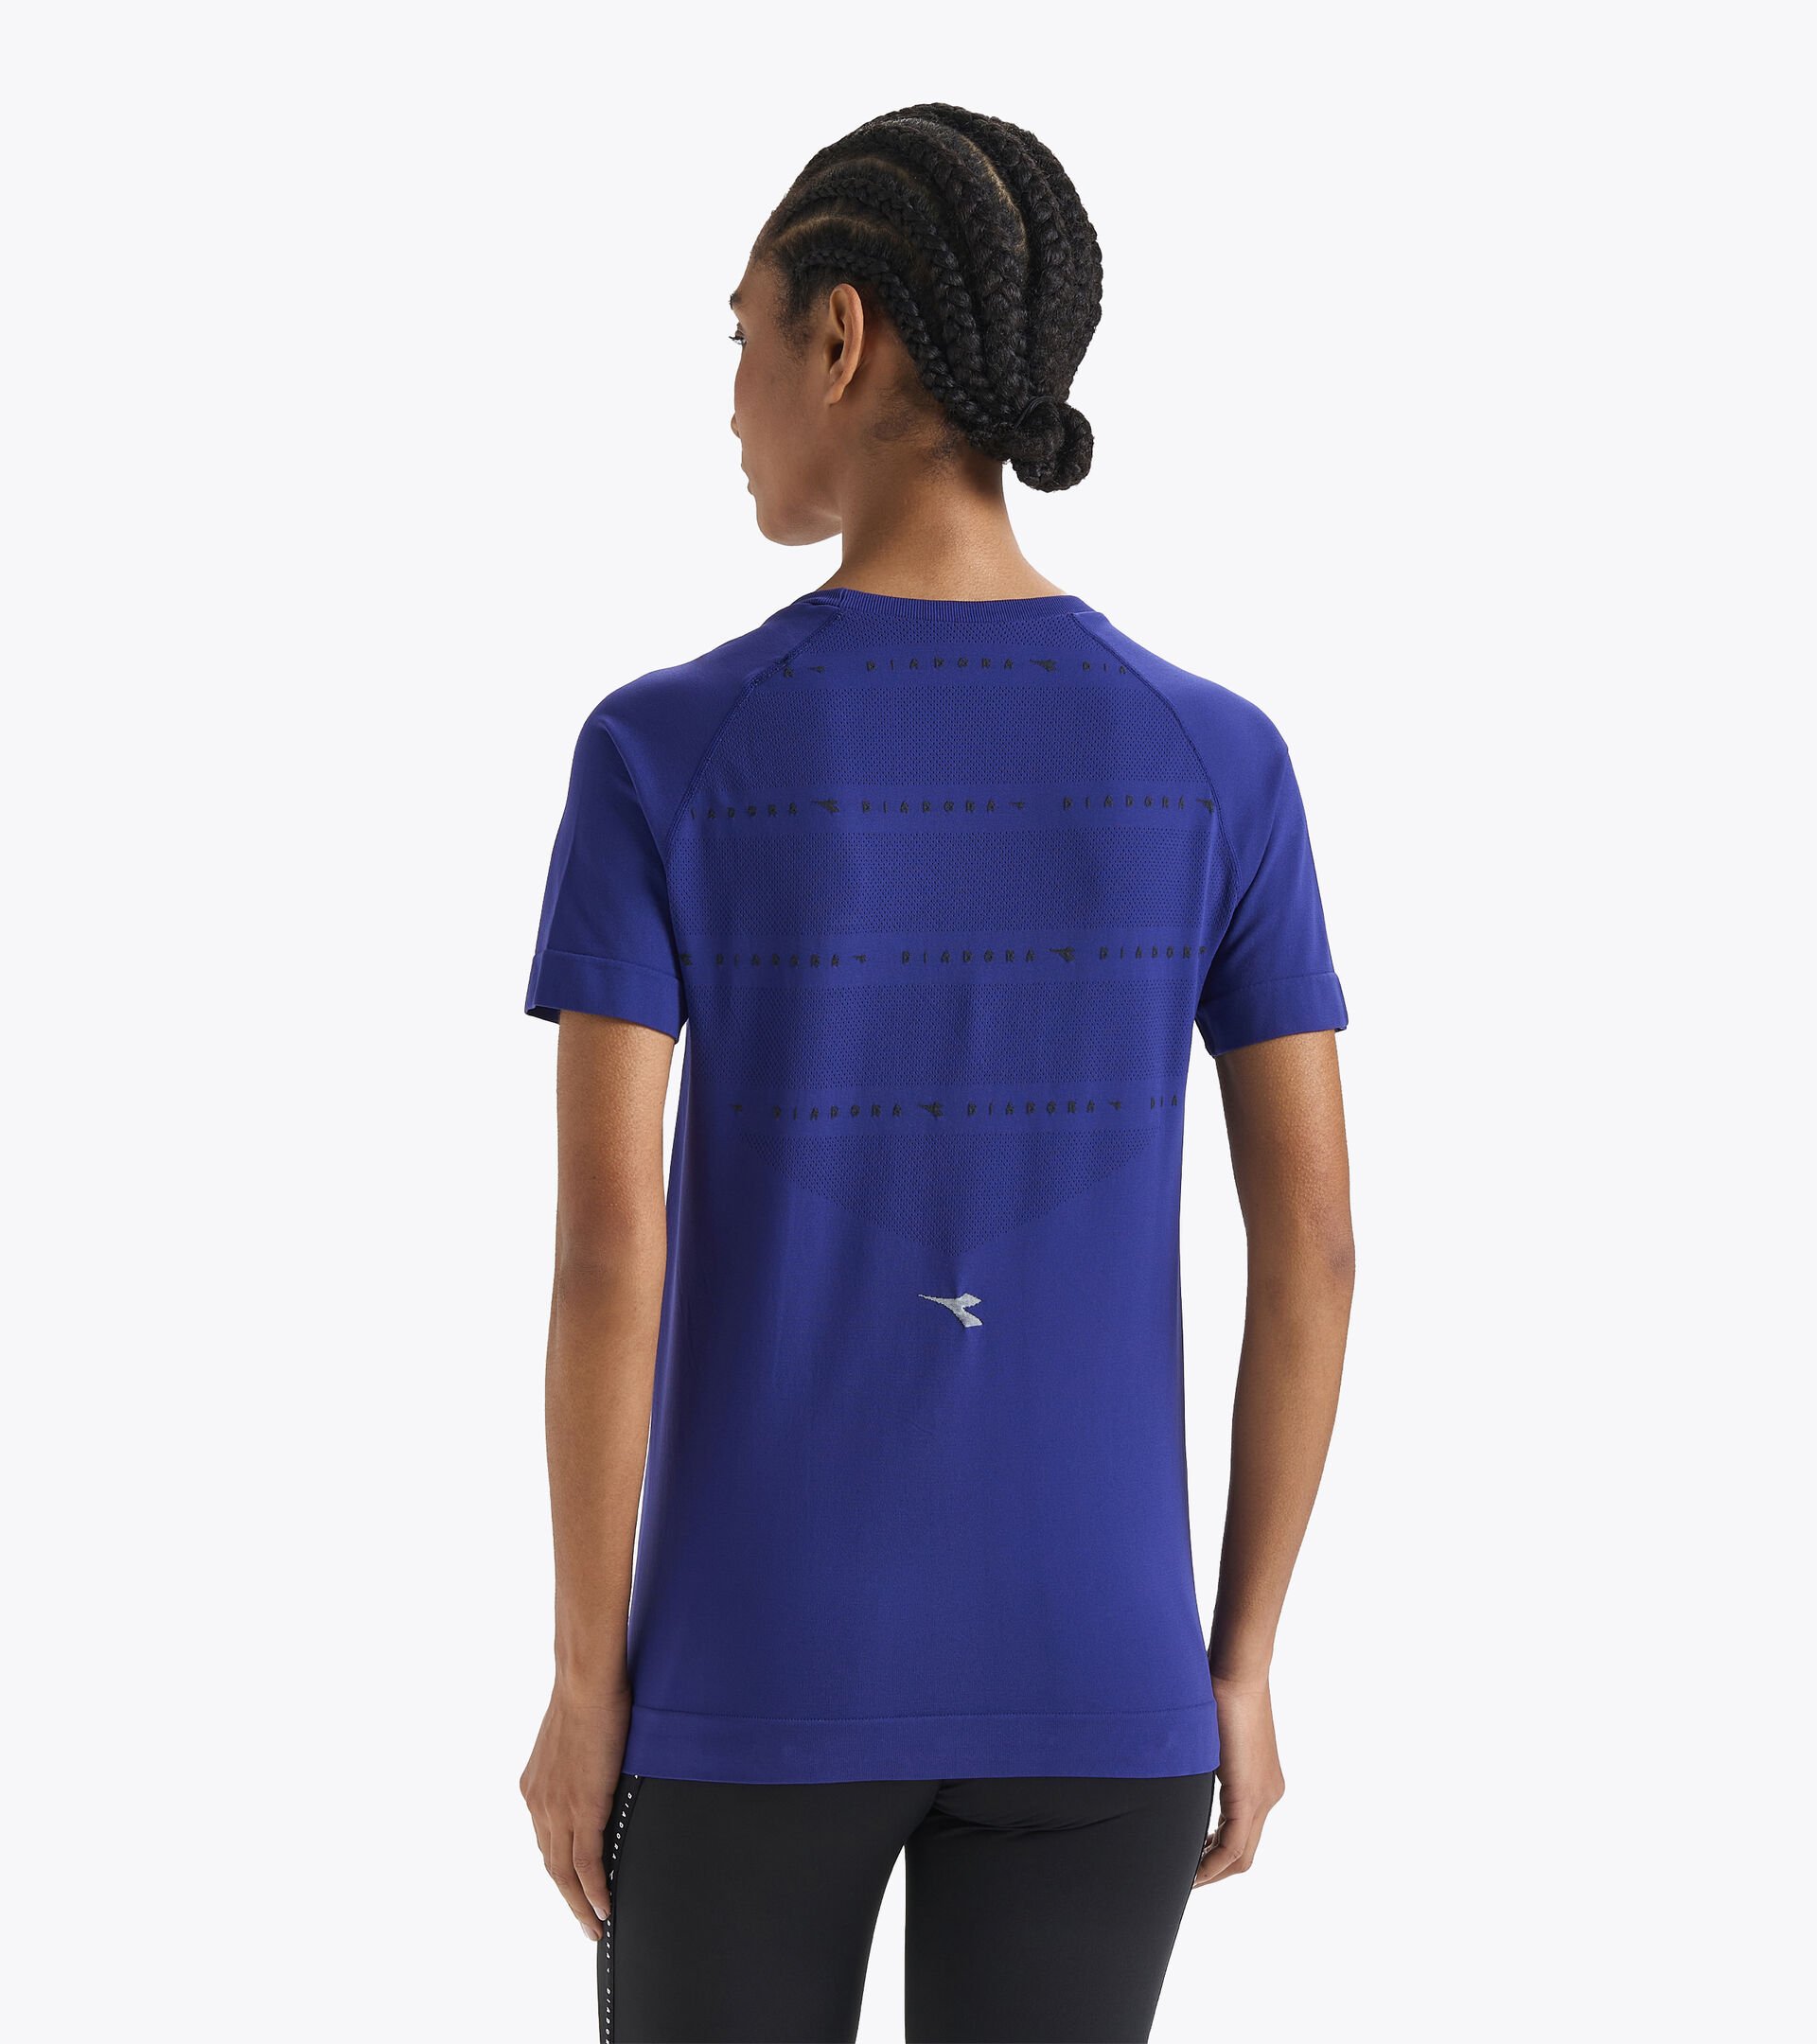 T-shirt de running Made in Italy - Femme L. SS SKIN FRIENDLY T-SHIRT BLUE PRINT - Diadora